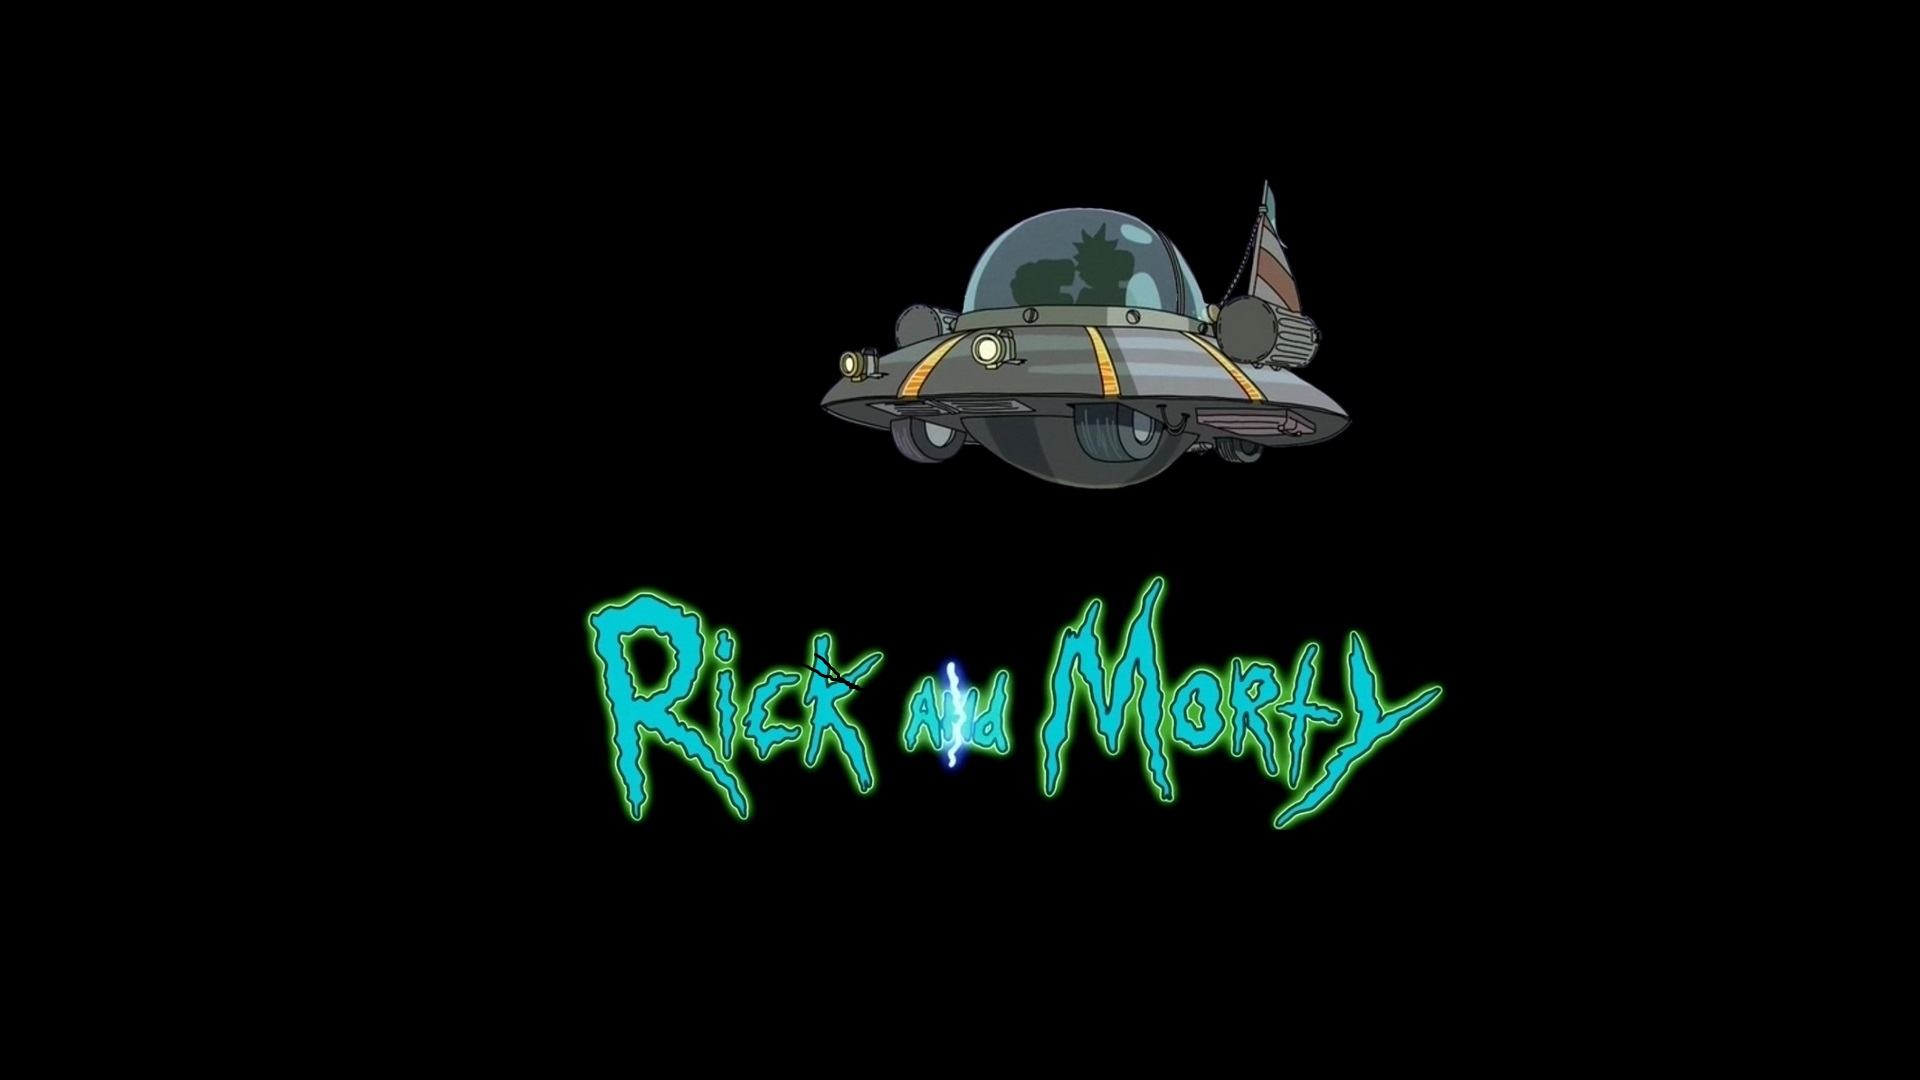 Los mejores fondos de pantalla de Crucero Espacial (Rick Y Morty) para la pantalla del teléfono